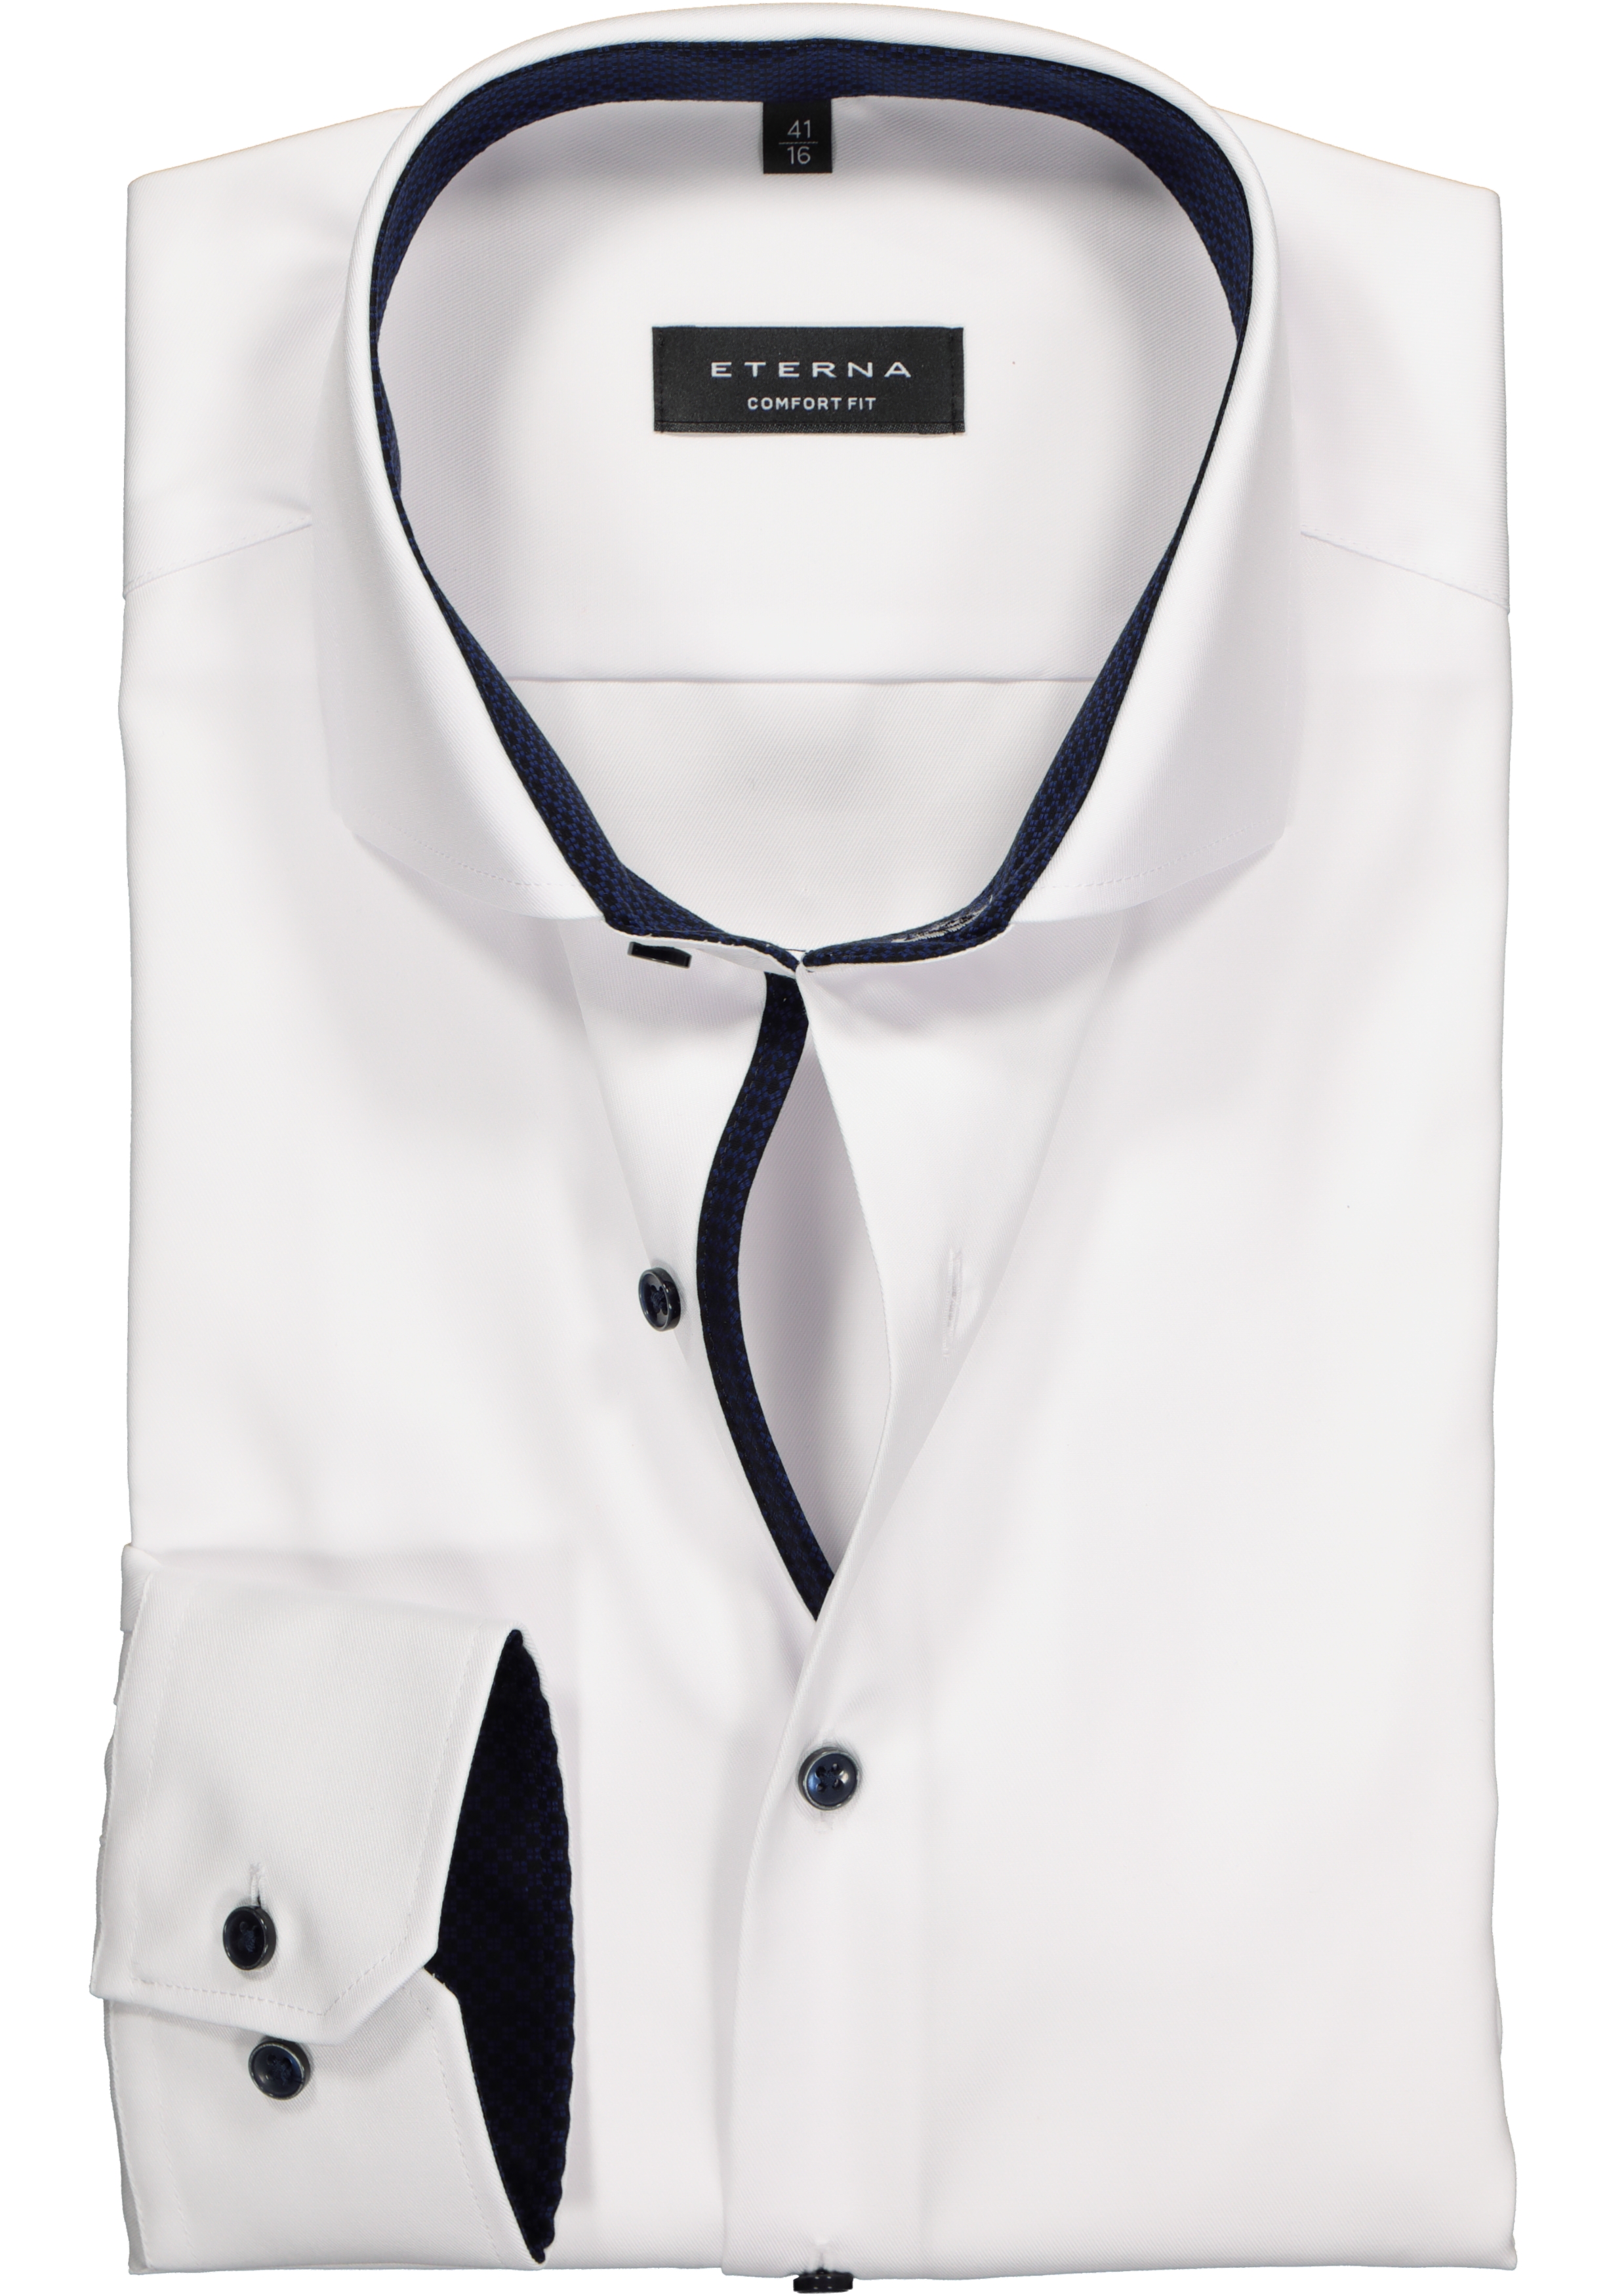 ETERNA comfort fit overhemd, niet doorschijnend twill heren overhemd, wit (blauw contrast)